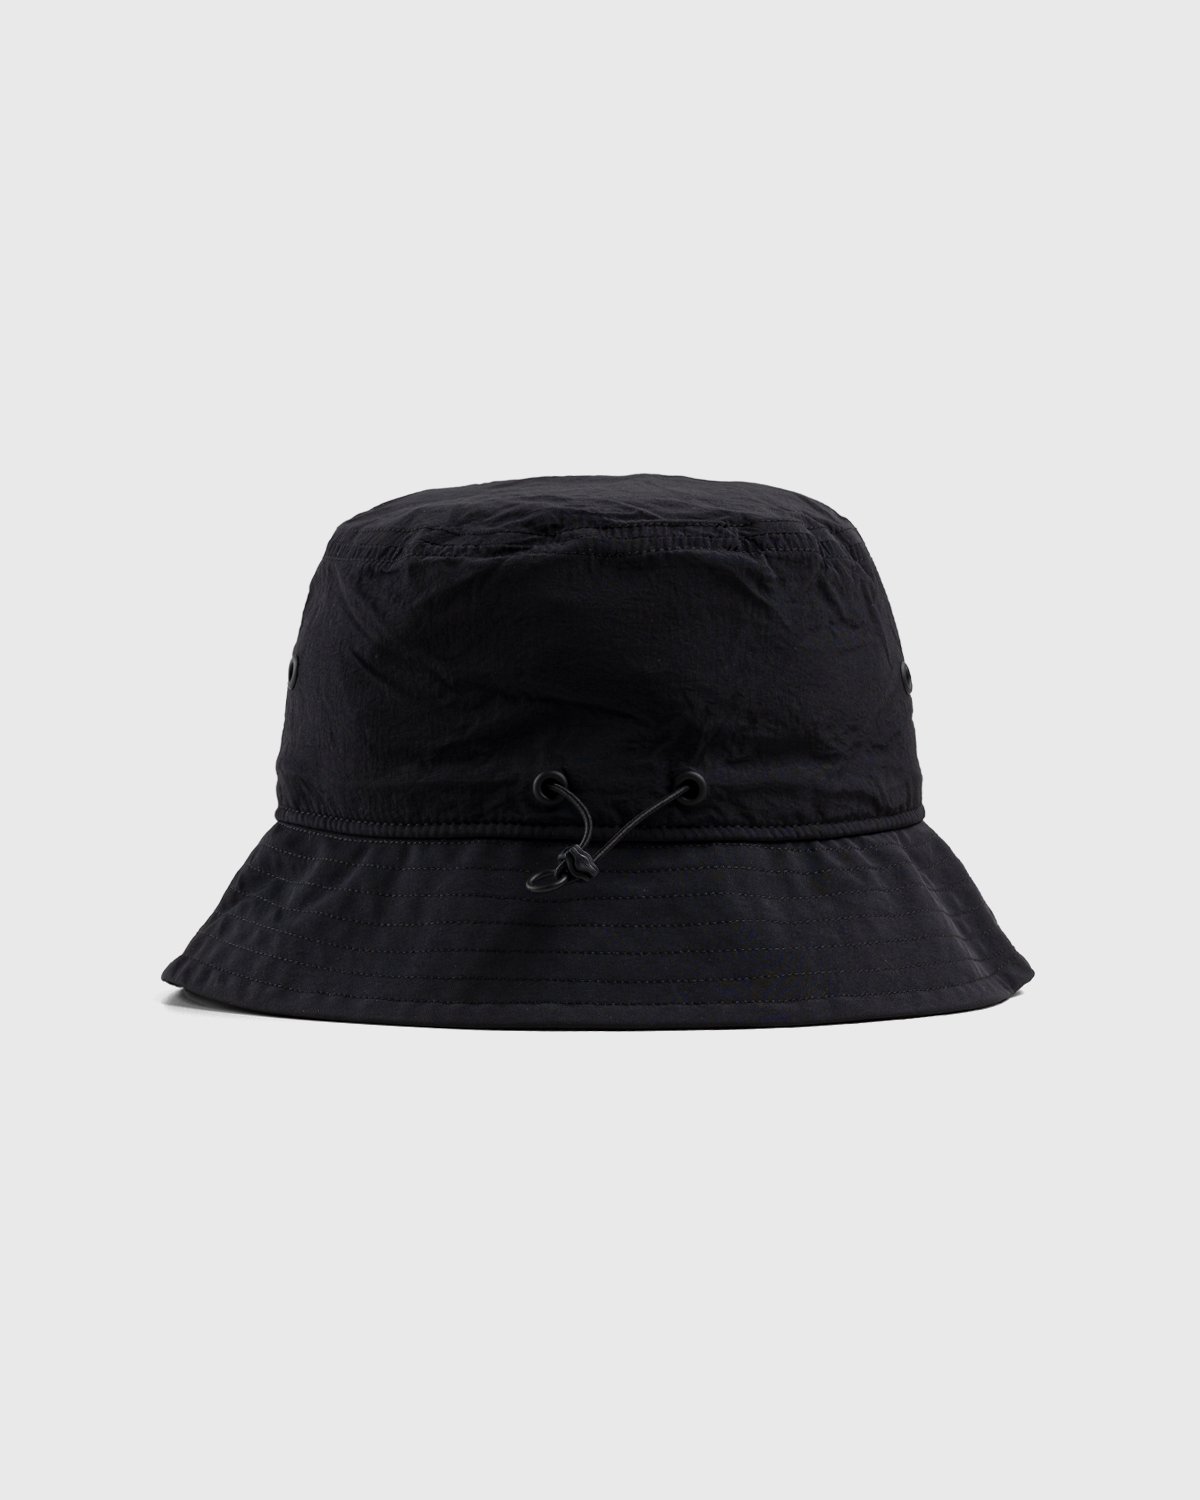 Y-3 - Logo Bucket Hat Black - Accessories - Black - Image 3